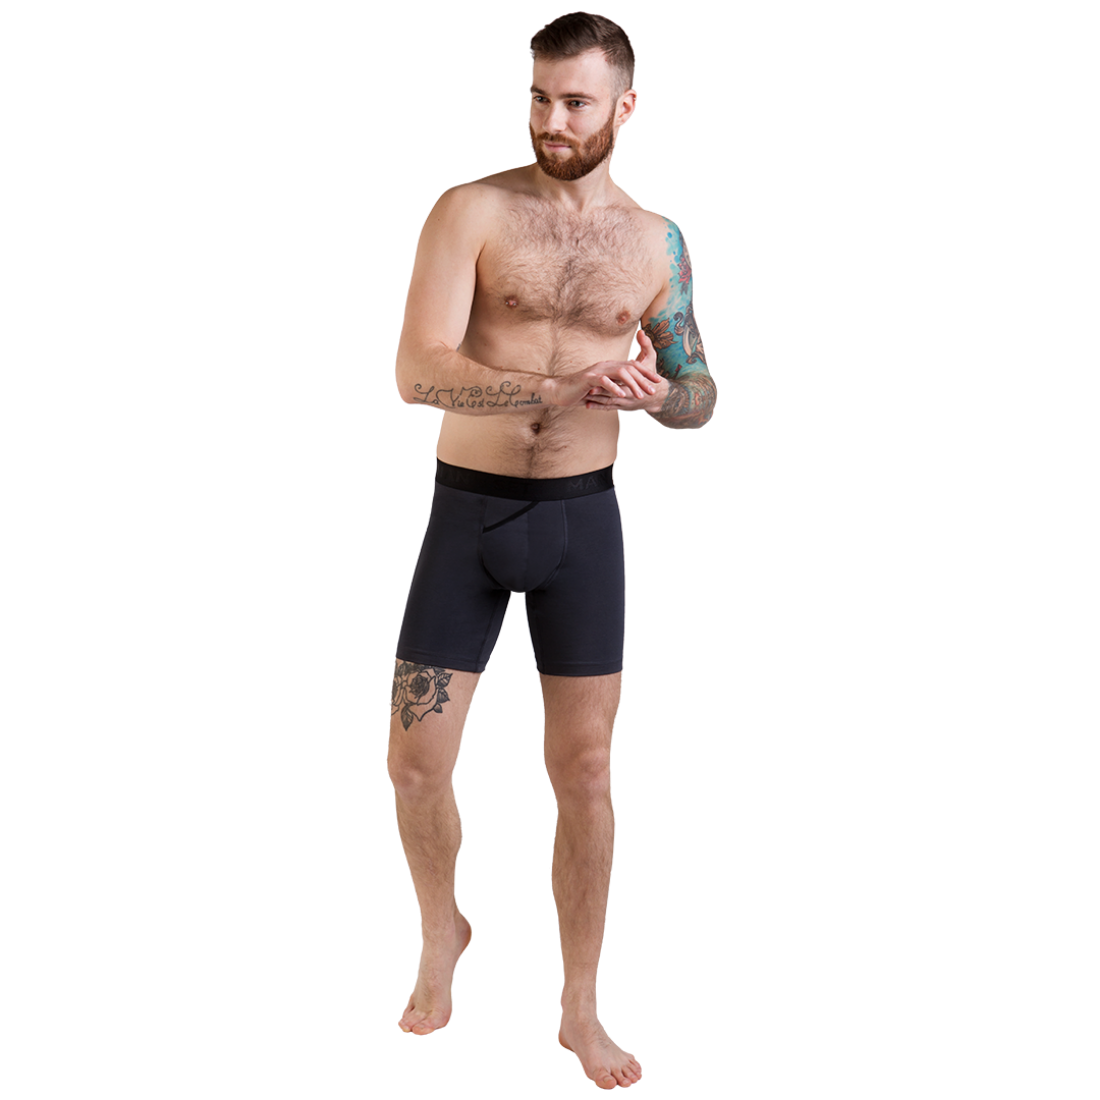 Мужские анатомические боксеры из хлопка, Anatomic Long 2.0, Black Series, бирюзовый MansSet - Фото 1